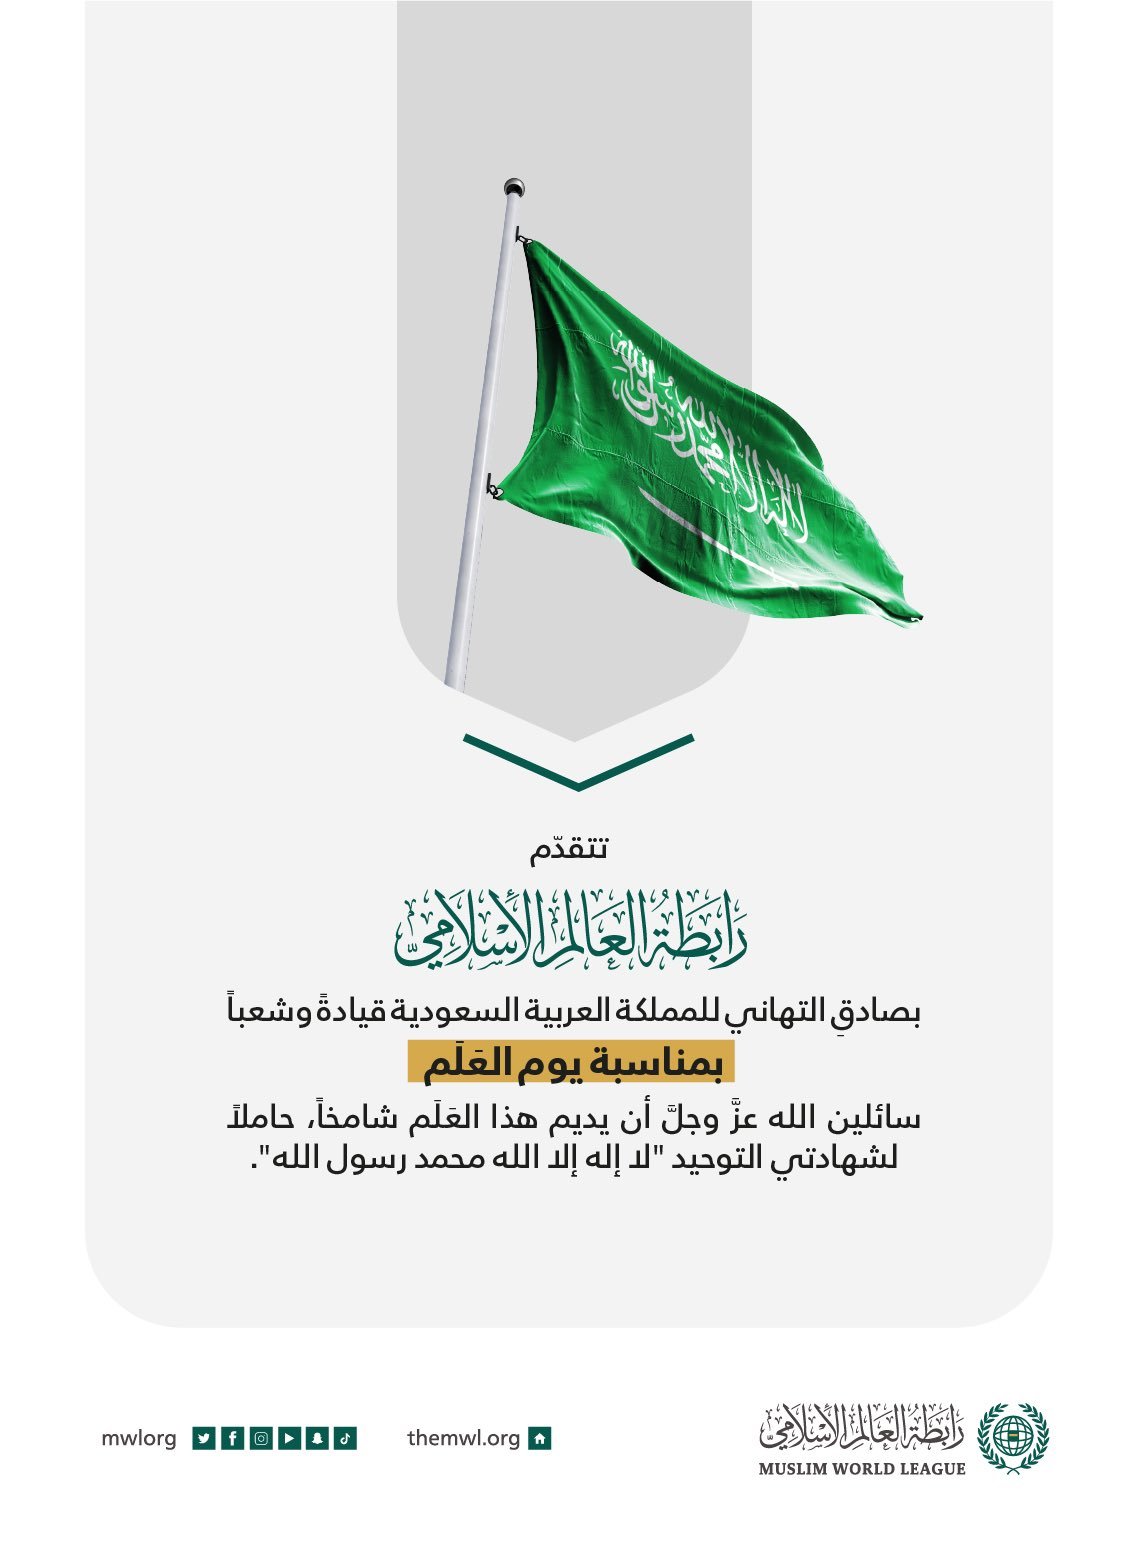 تهنئةُ ⁧‫رابطة العالم الإسلامي‬⁩ للمملكة العربية السعودية، بمناسبة ⁧‫يوم العلم‬⁩: